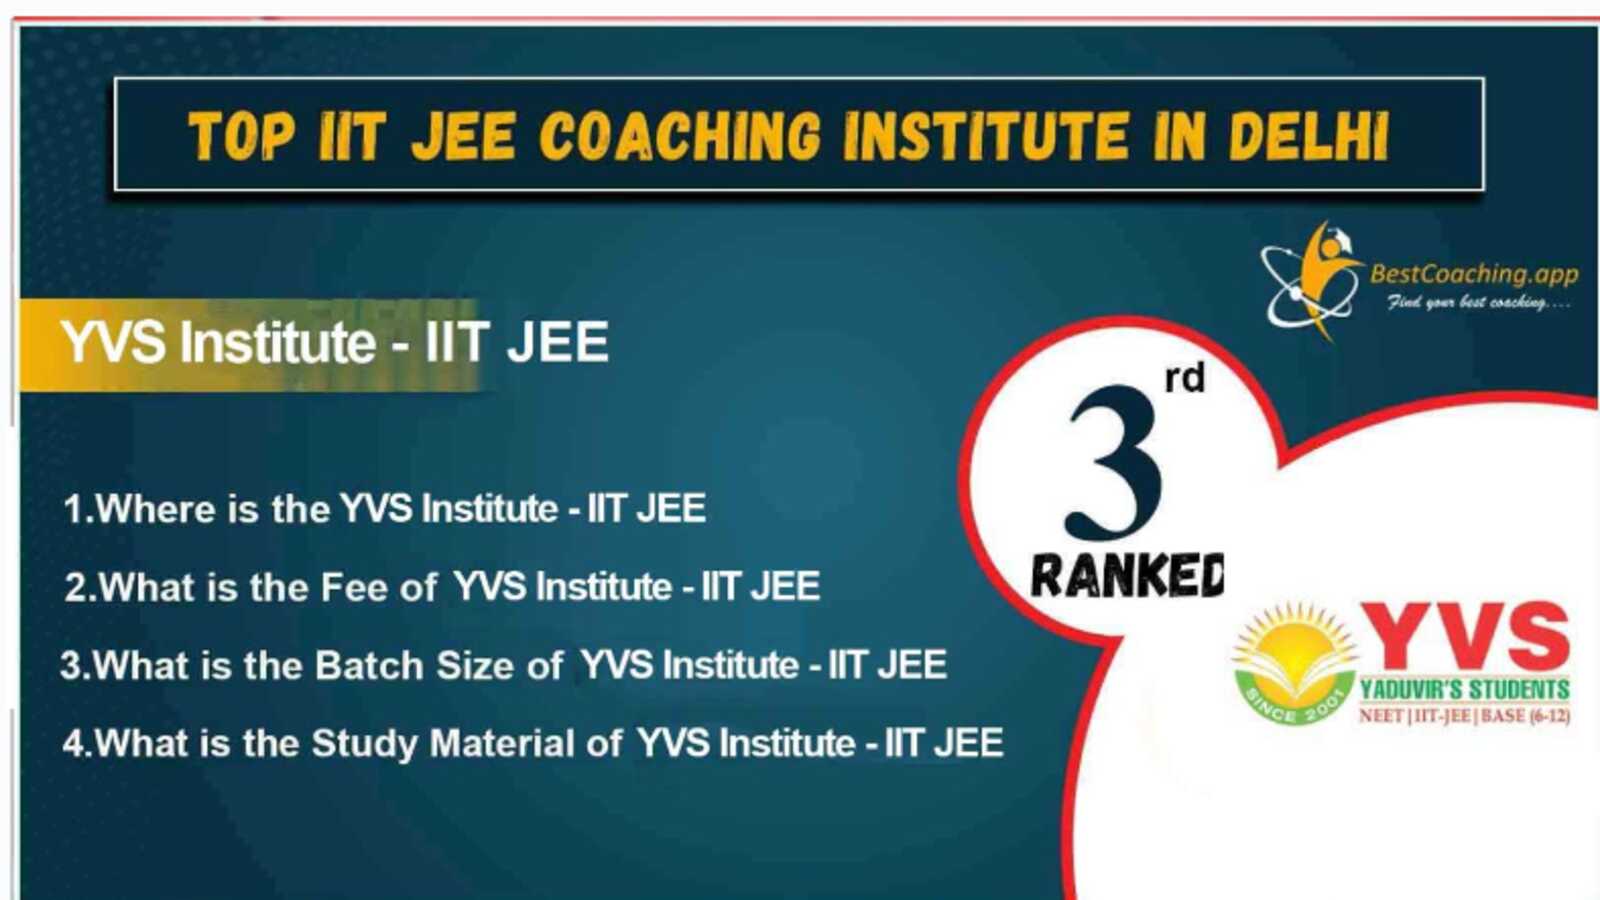 Top IIT Coaching Institute in Delhi